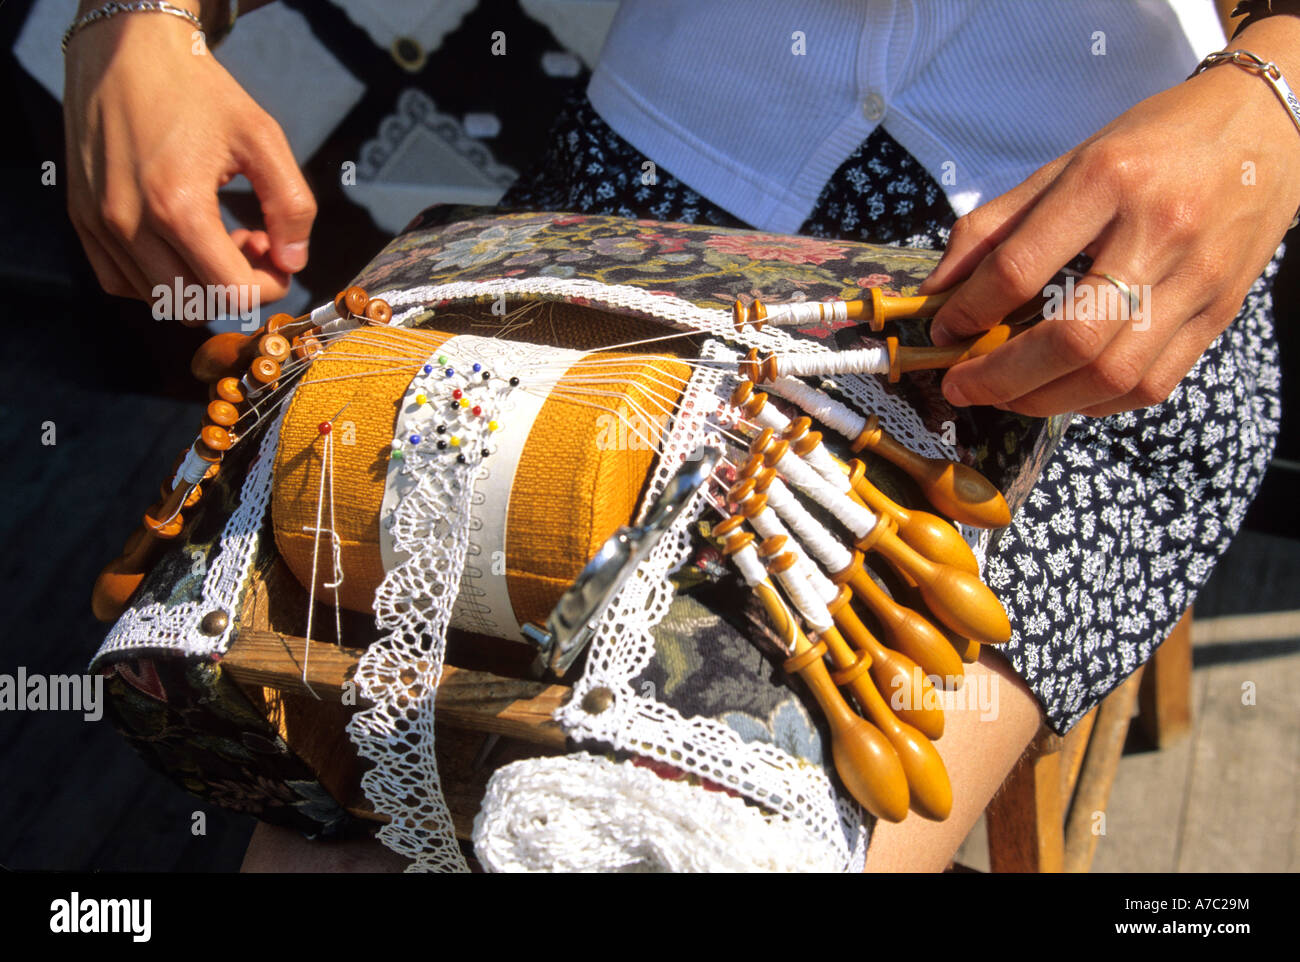 Spitzenklöpplerin - Frau Herstellung traditioneller Spitze mit Klöppeln in Auvergne, Frankreich Stockfoto